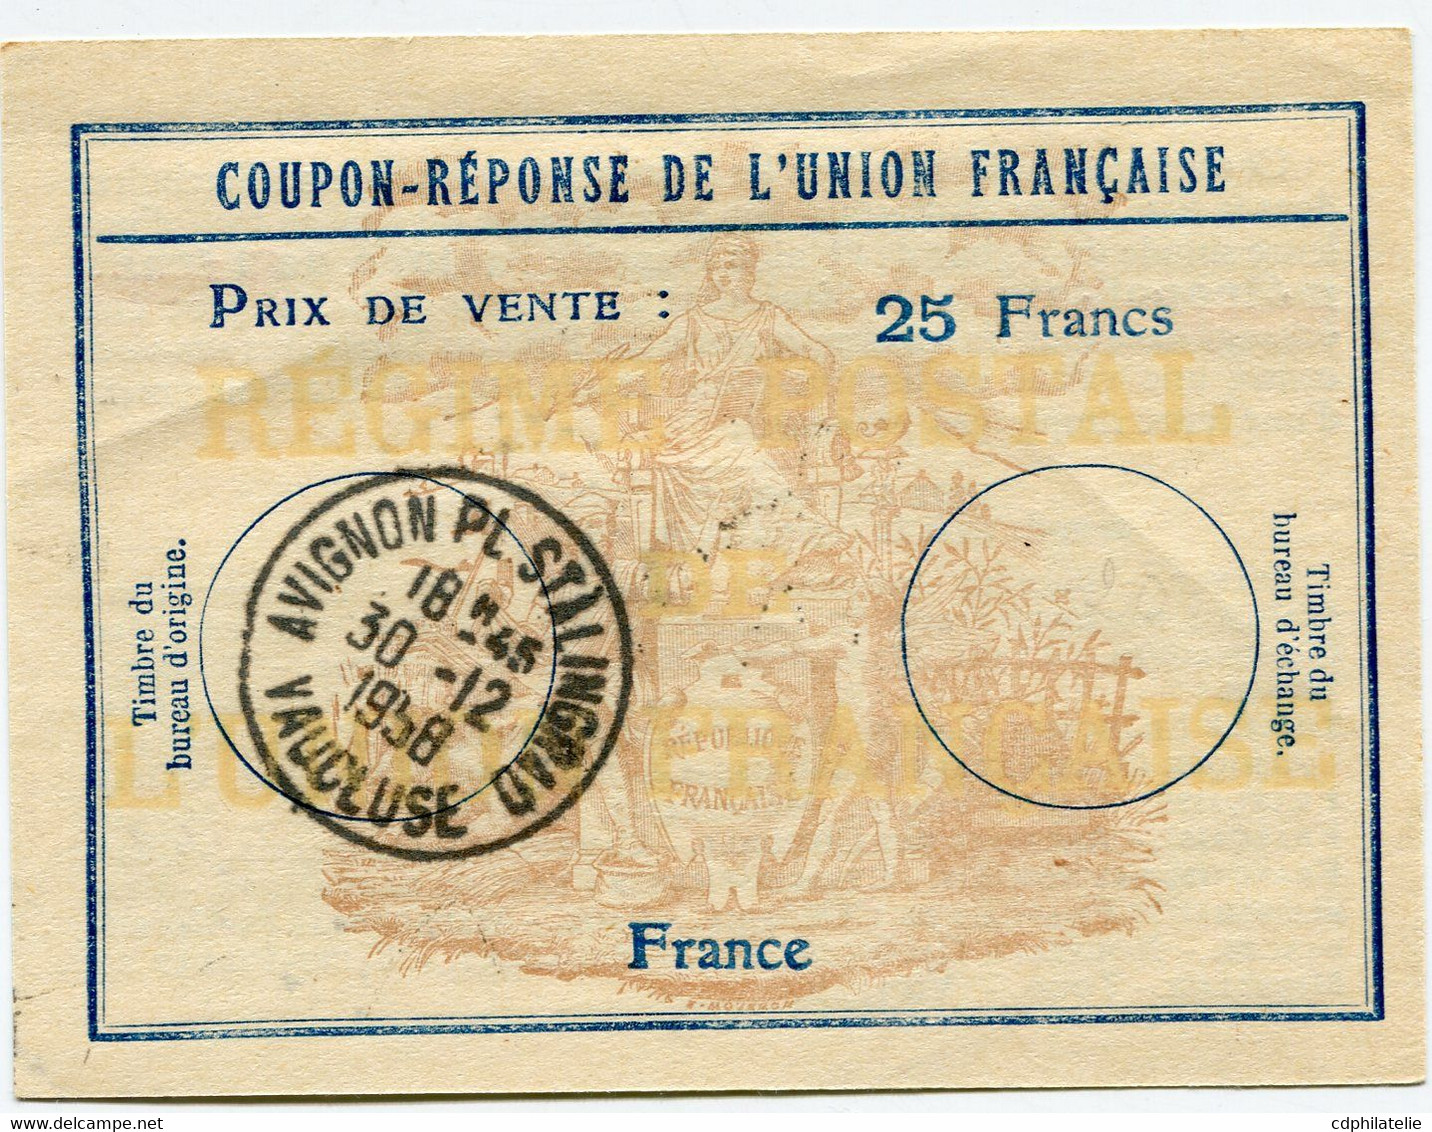 FRANCE COUPON-REPONSE DE L'UNION FRANCAISE PRIX DE VENTE : 25 FRANCS AVEC OBL AVIGNON PL STALINGRAD 30-12-1958 VAUCLUSE - Coupons-réponse